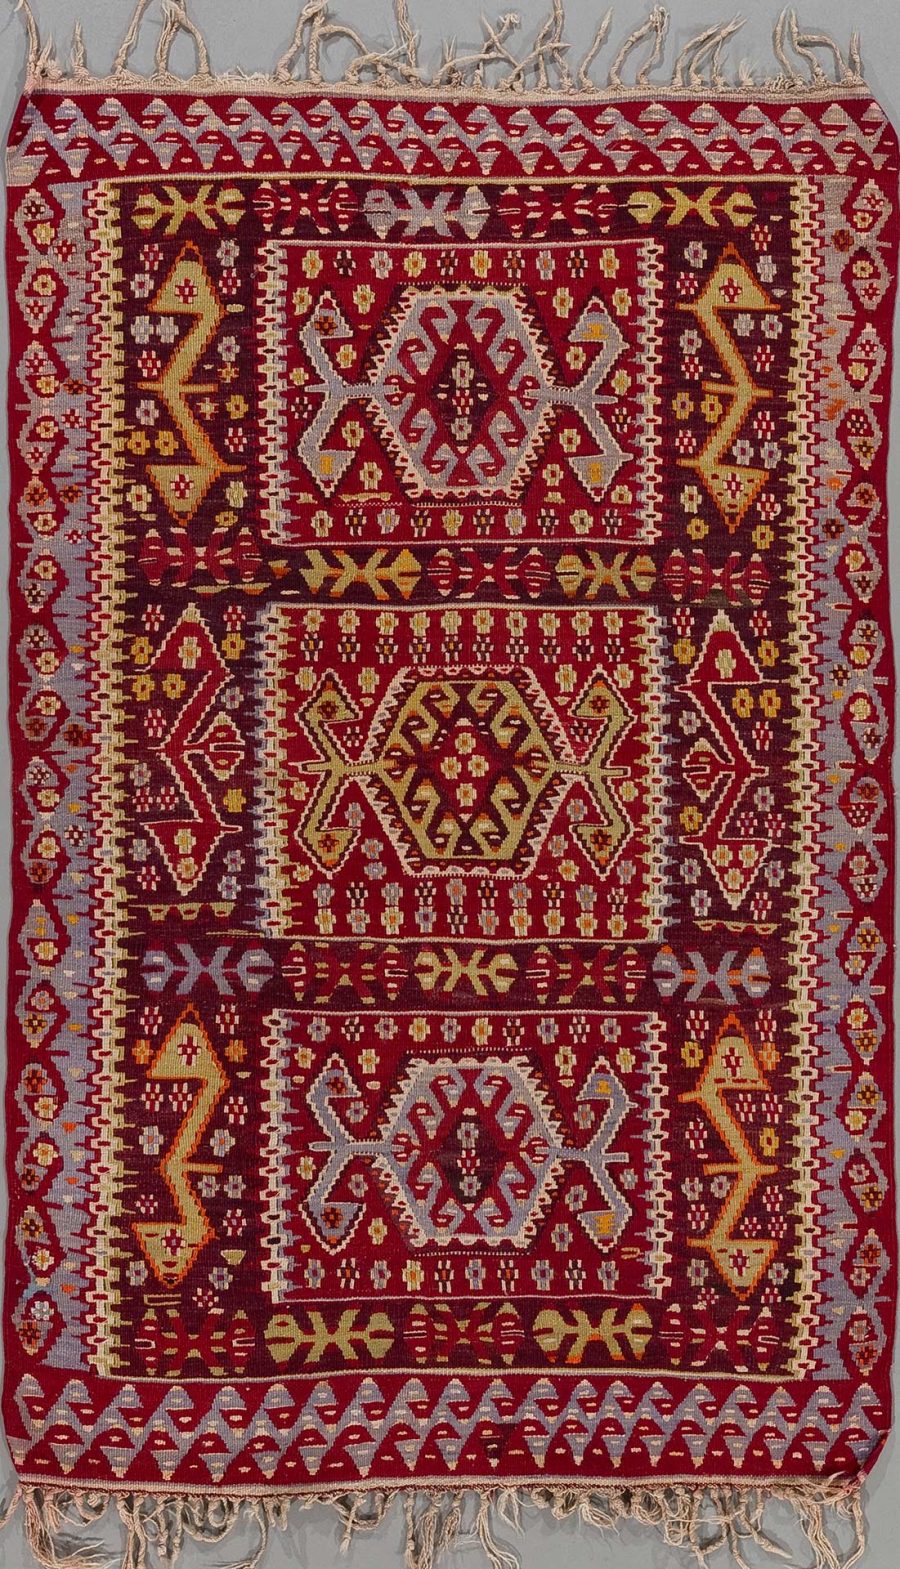 Traditioneller Teppich mit komplexem Muster in Rot-, Beige- und Gelbtönen sowie grauem Hintergrund, Fransen an den Enden.